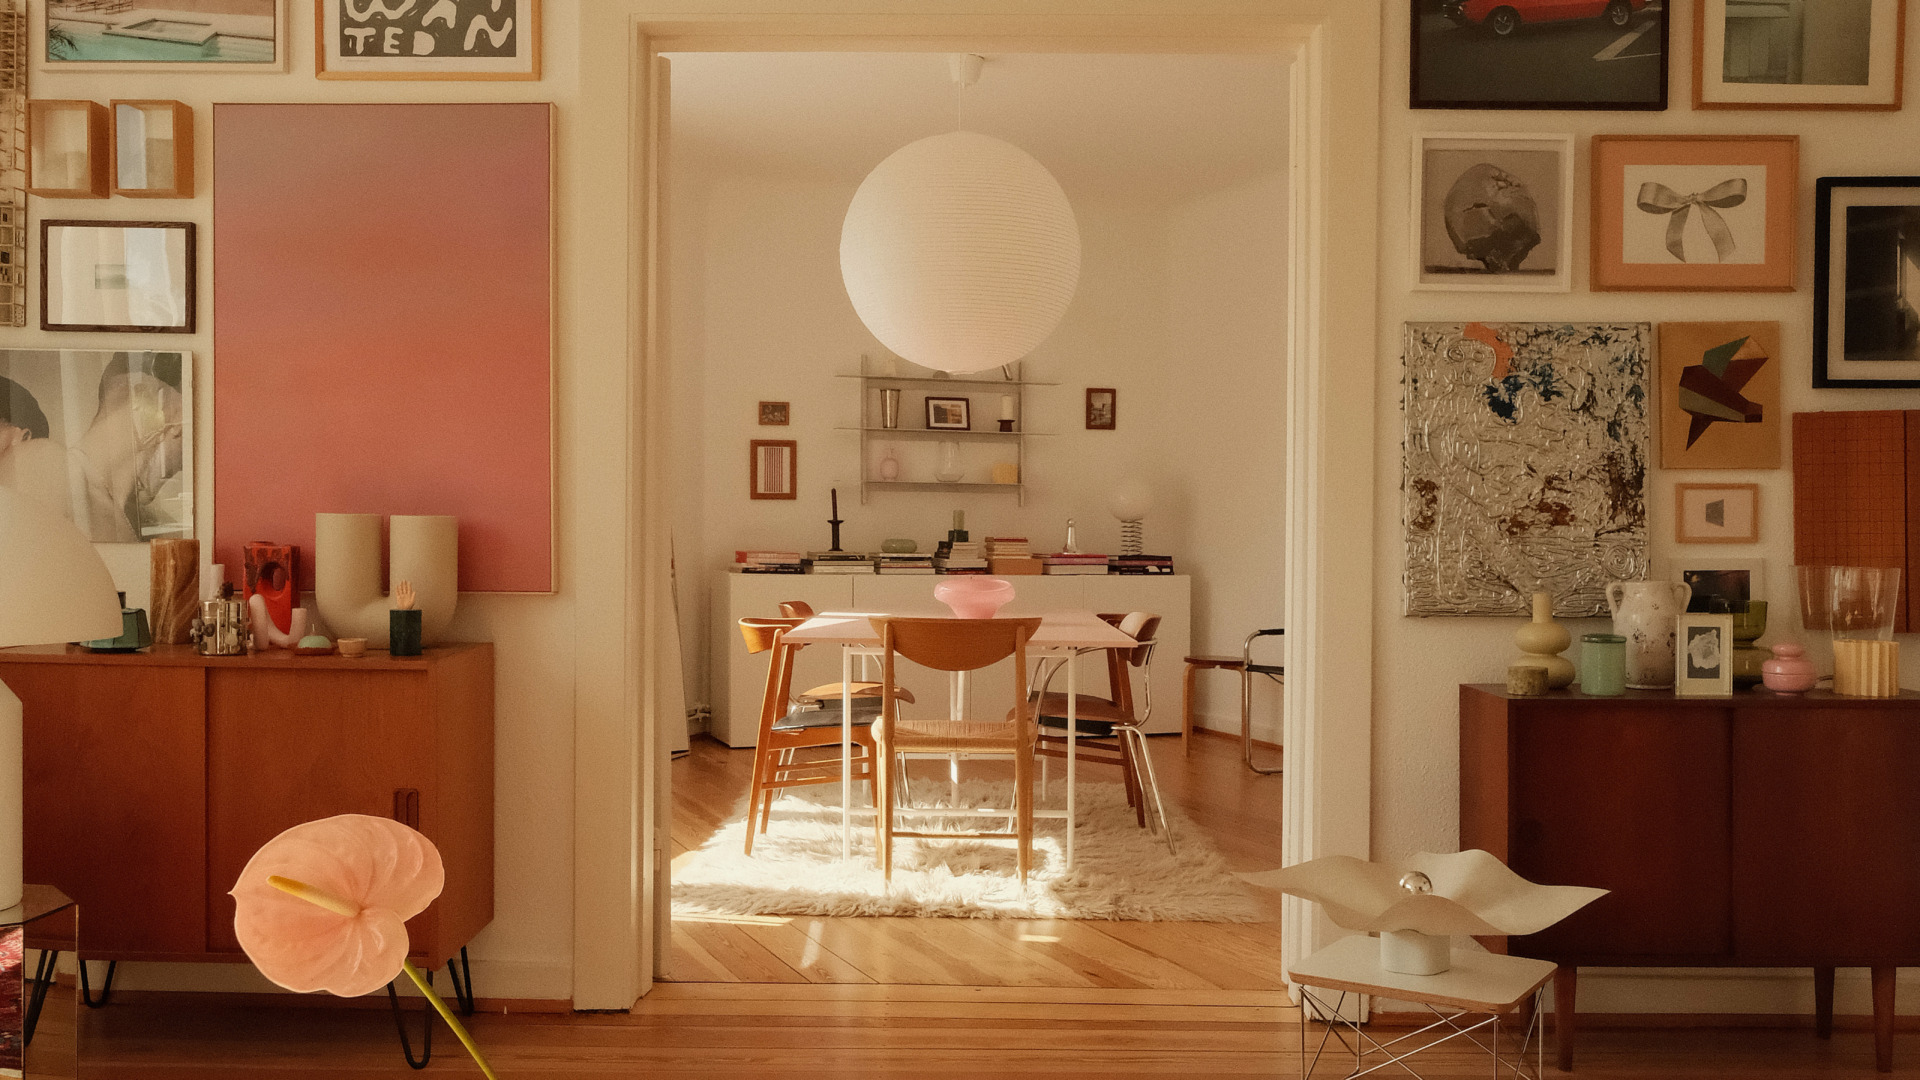 핑크빛 드림 하우스! 독일 함부르크에 자리한 크리에이터 암나의 홈 #마이월드